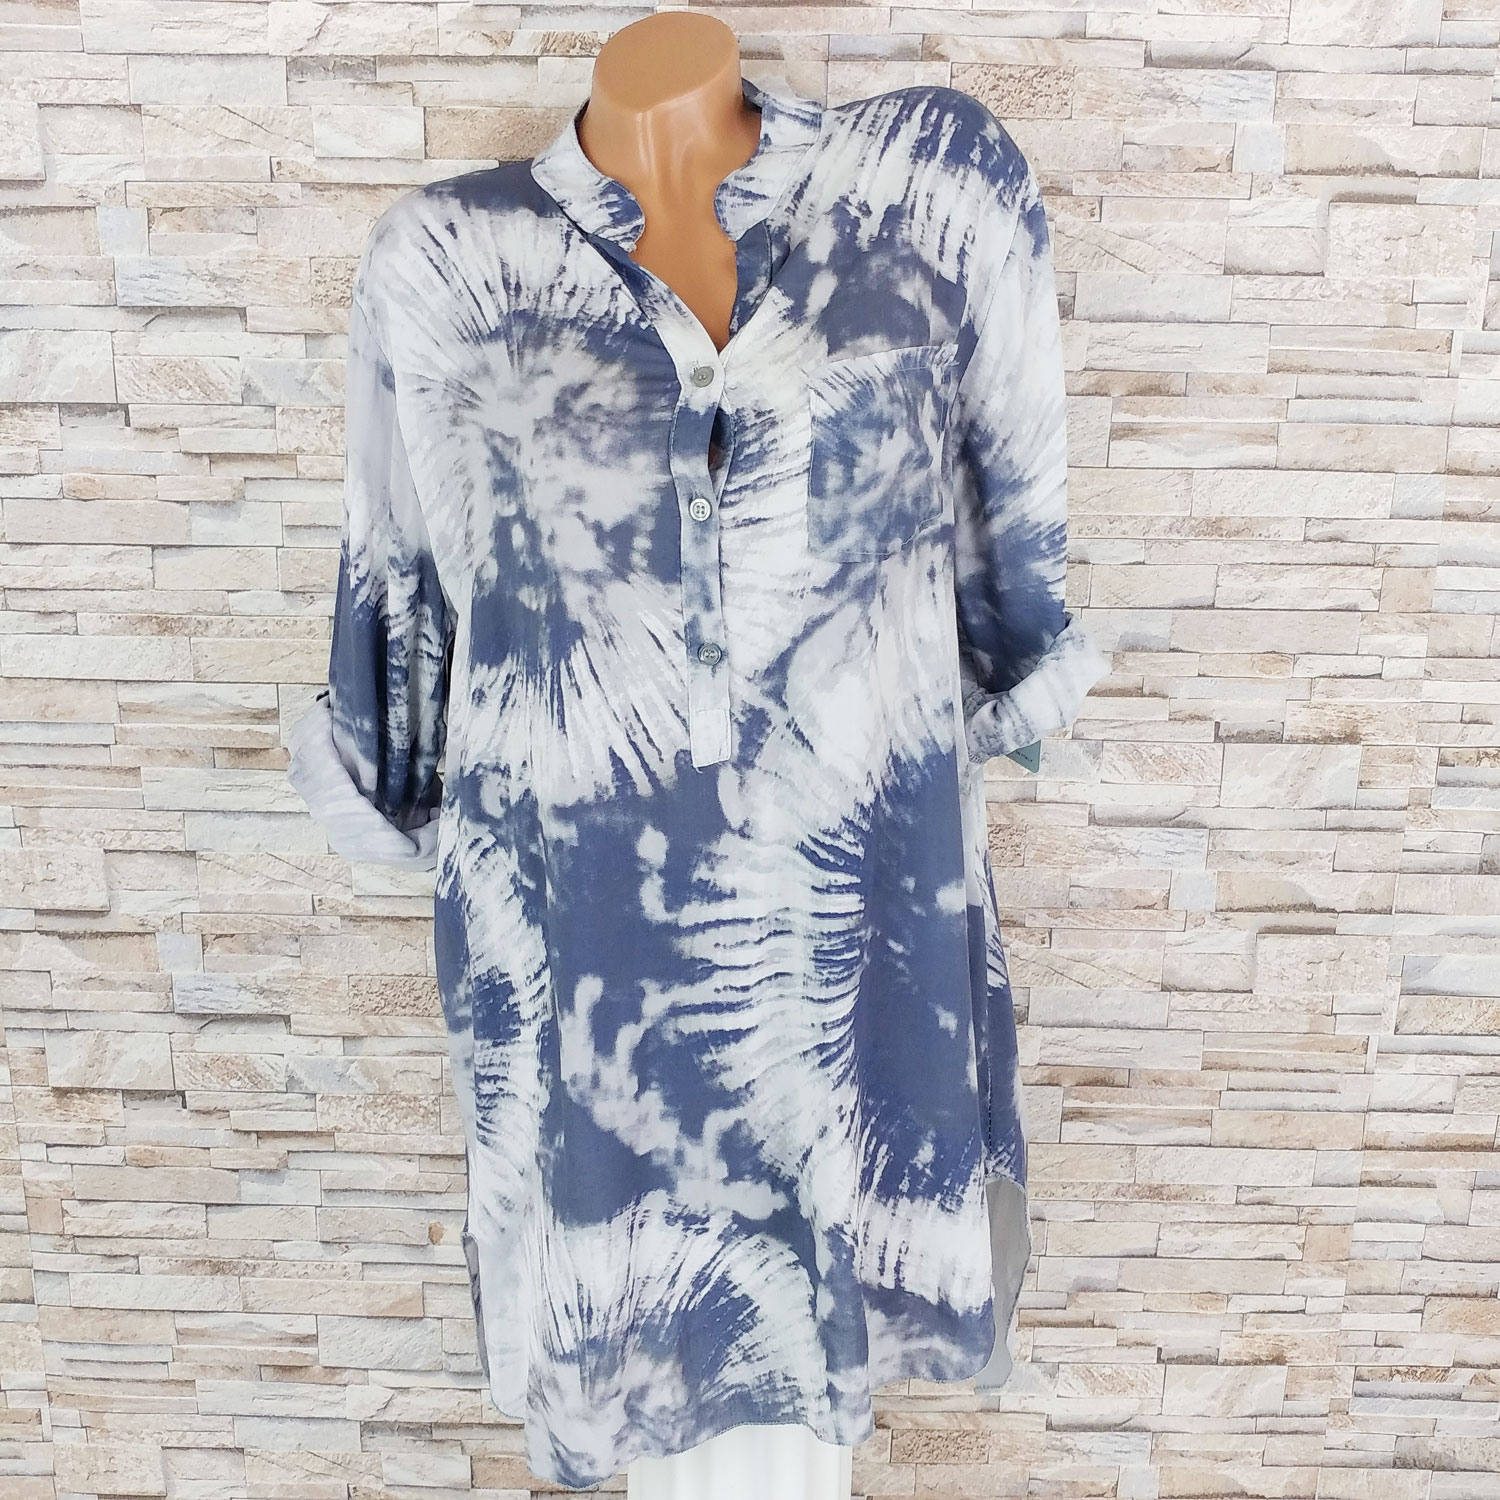 Hemdblusenkleid Im Batik Print  Kleider  Kleidung  Dressara